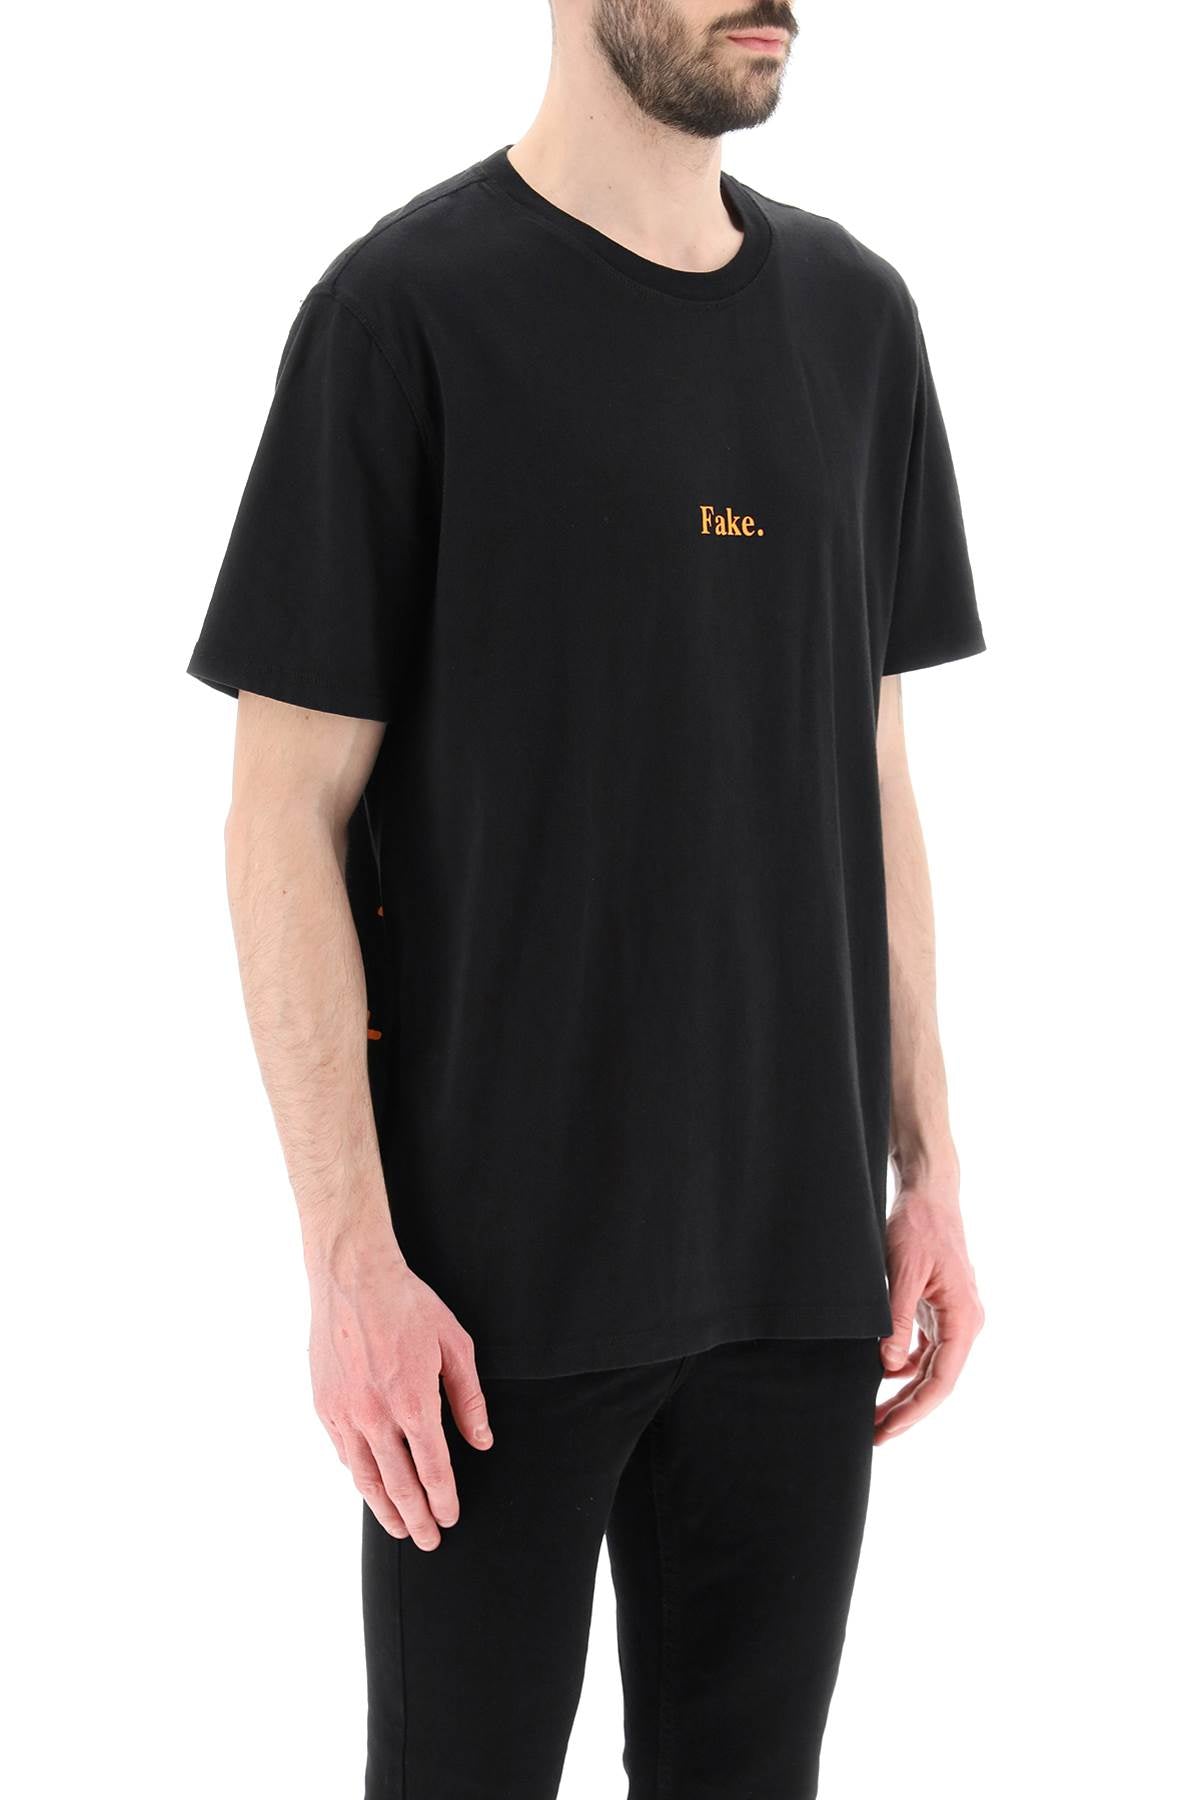 Ksubi 'Fake' T Shirt   Black